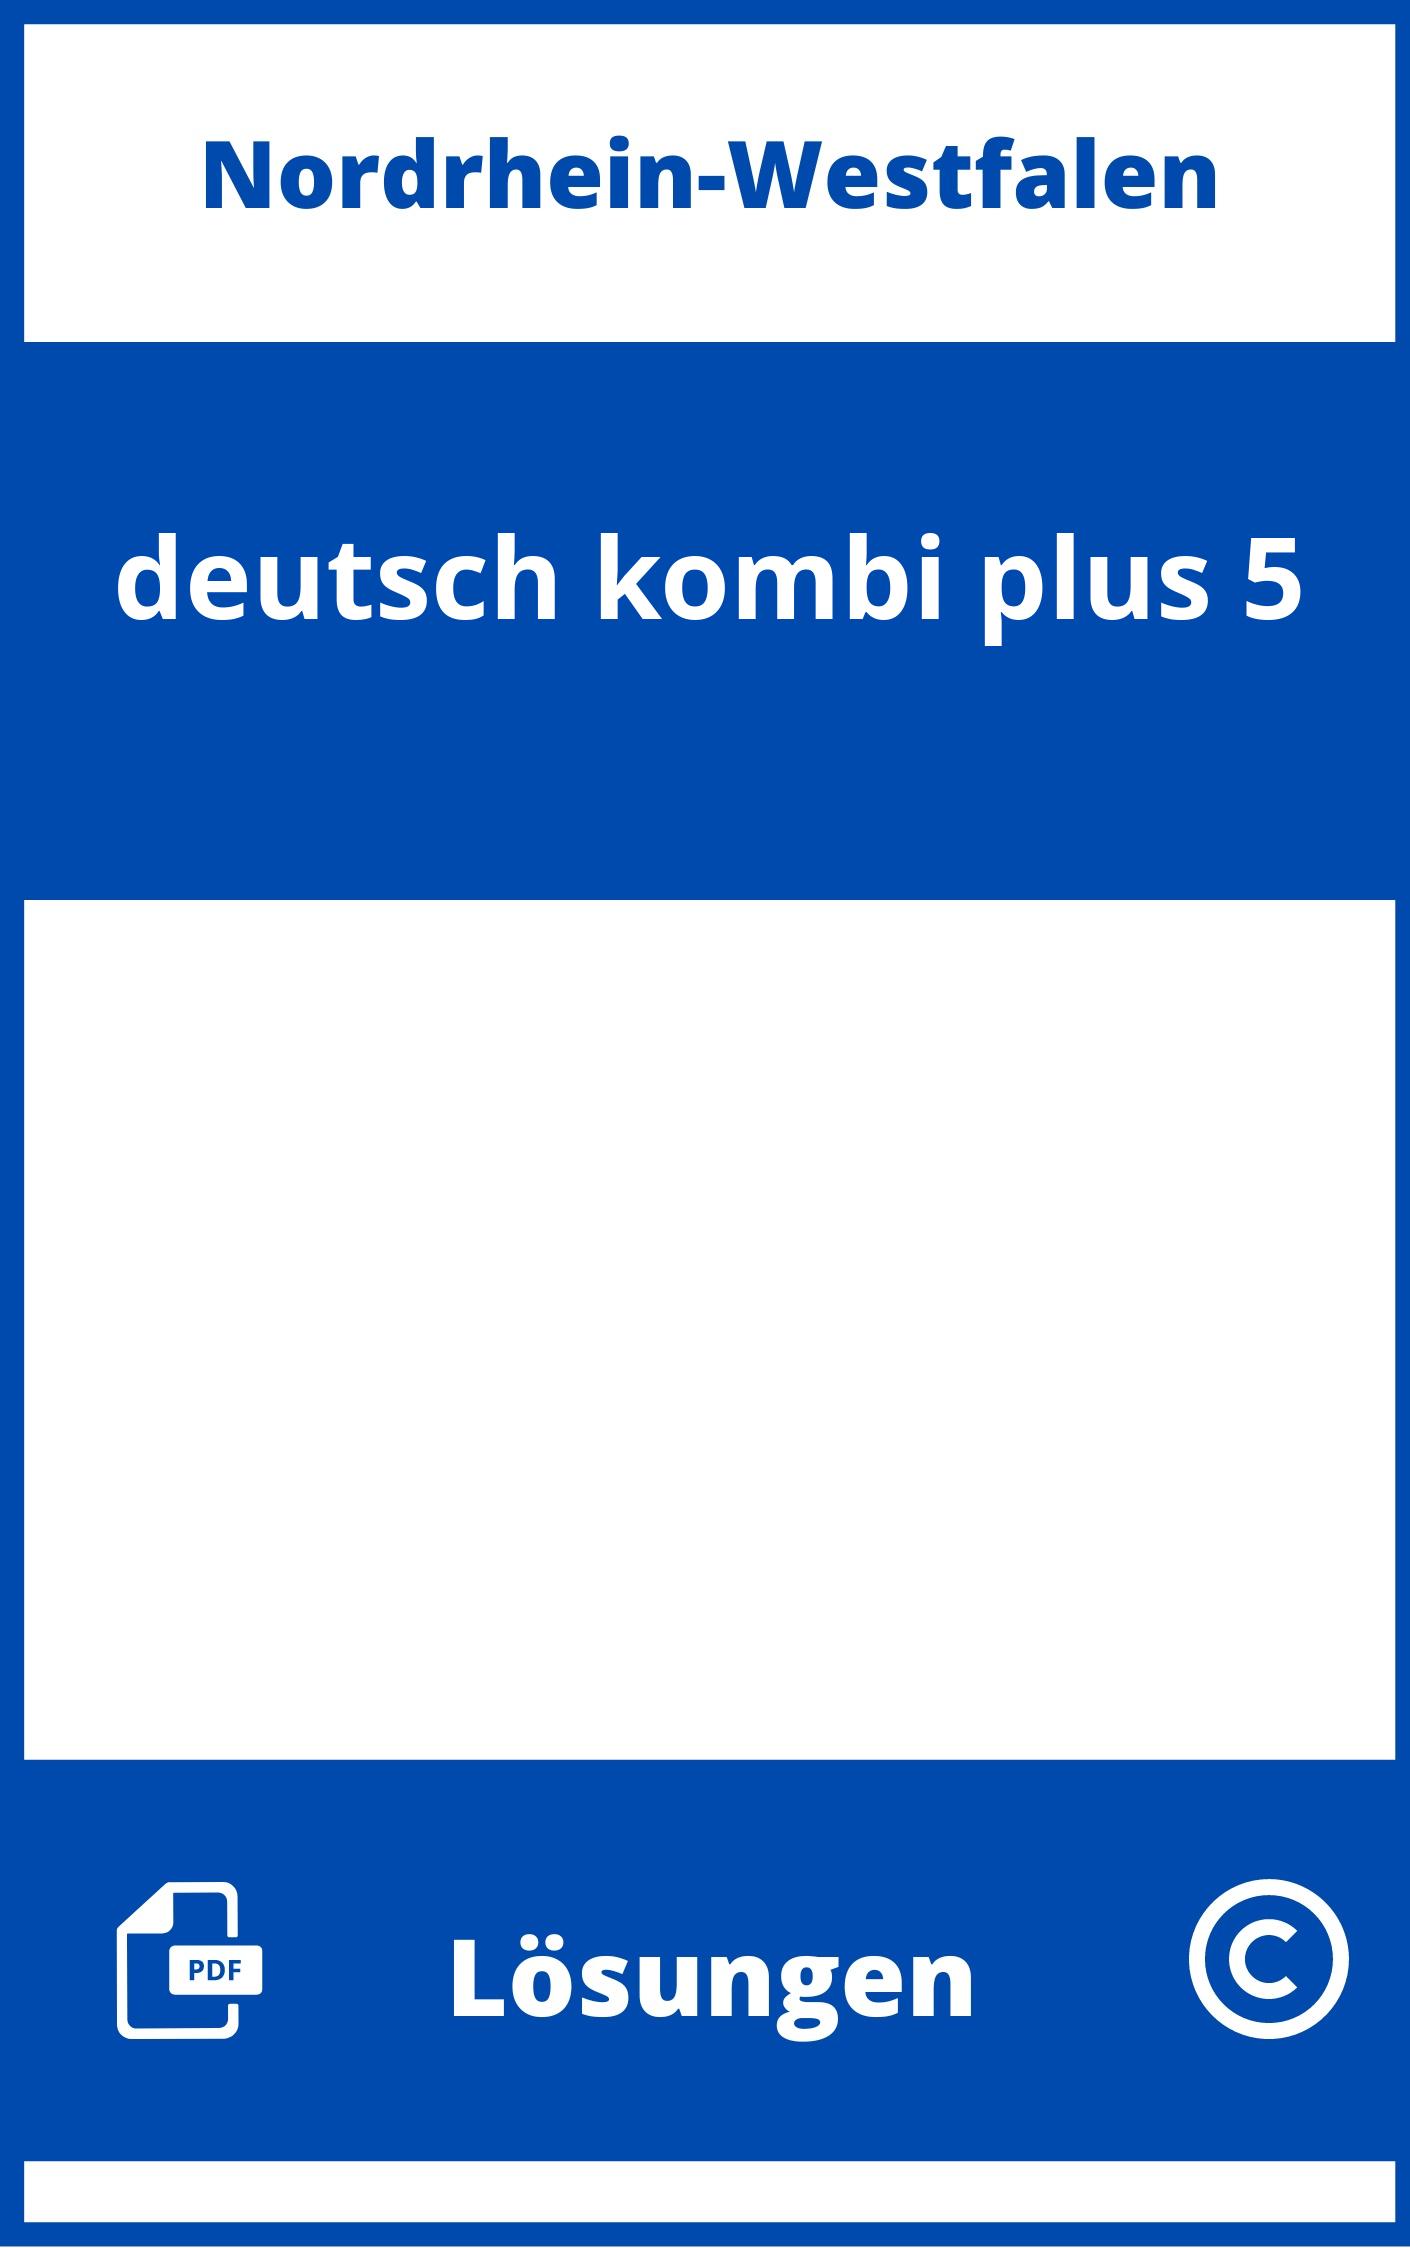 deutsch.kombi plus 5 Lösungen NRW PDF